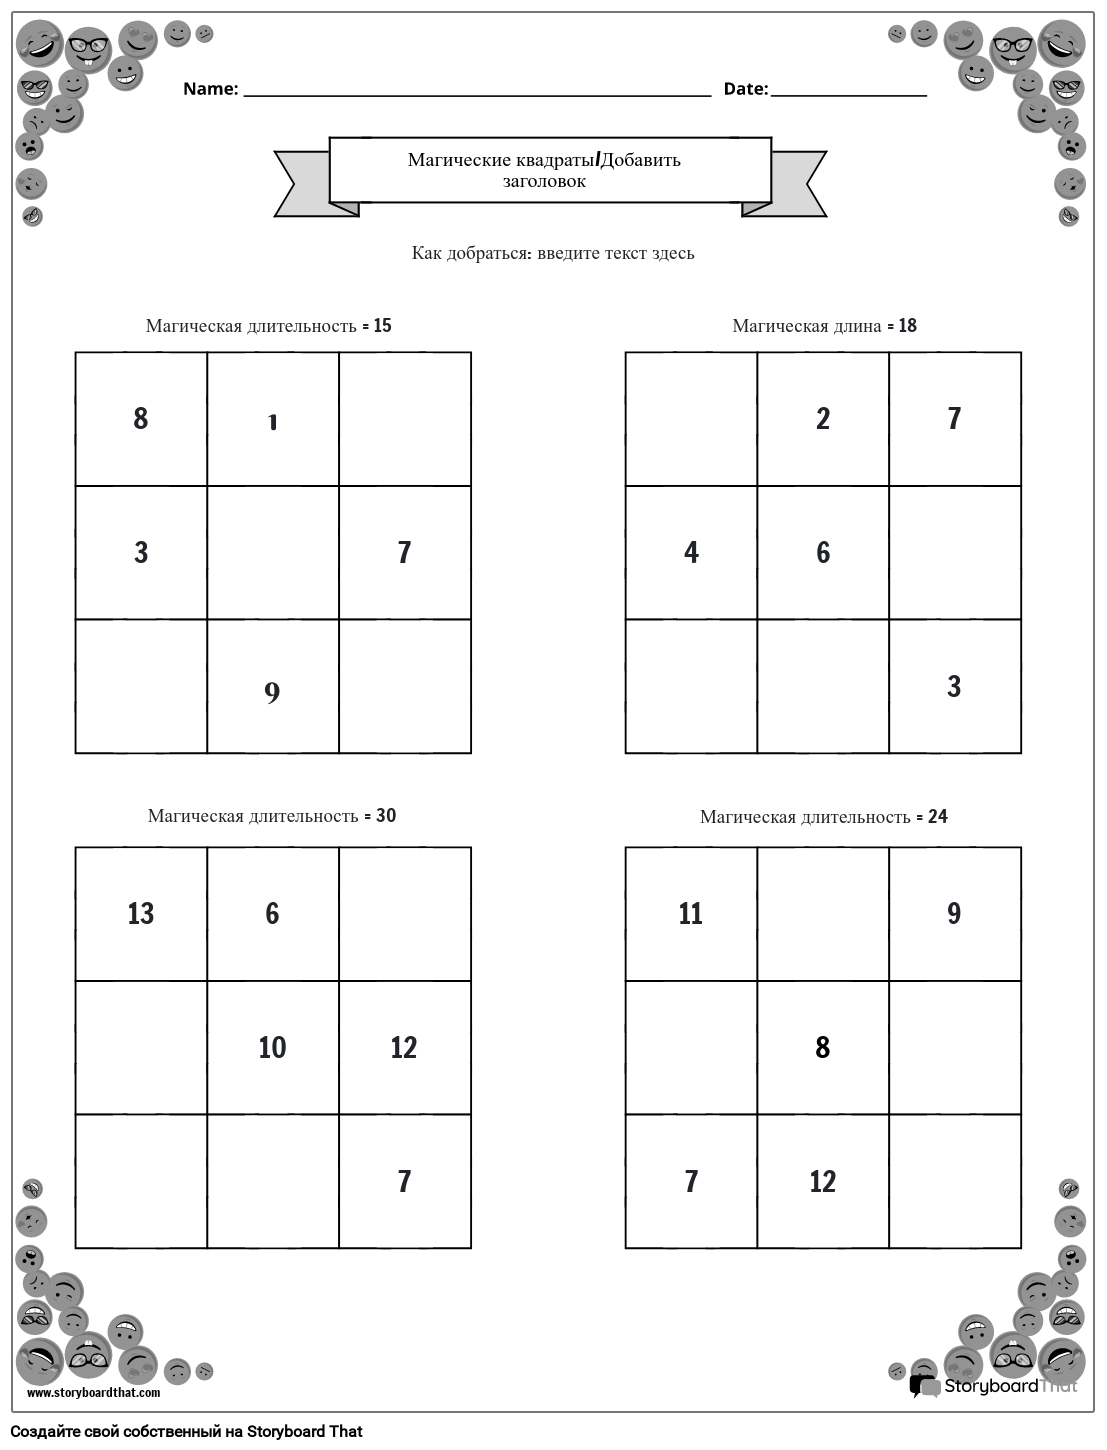 Рабочий лист 3x3 с волшебными квадратами и рамкой для смайлика (черно-белый